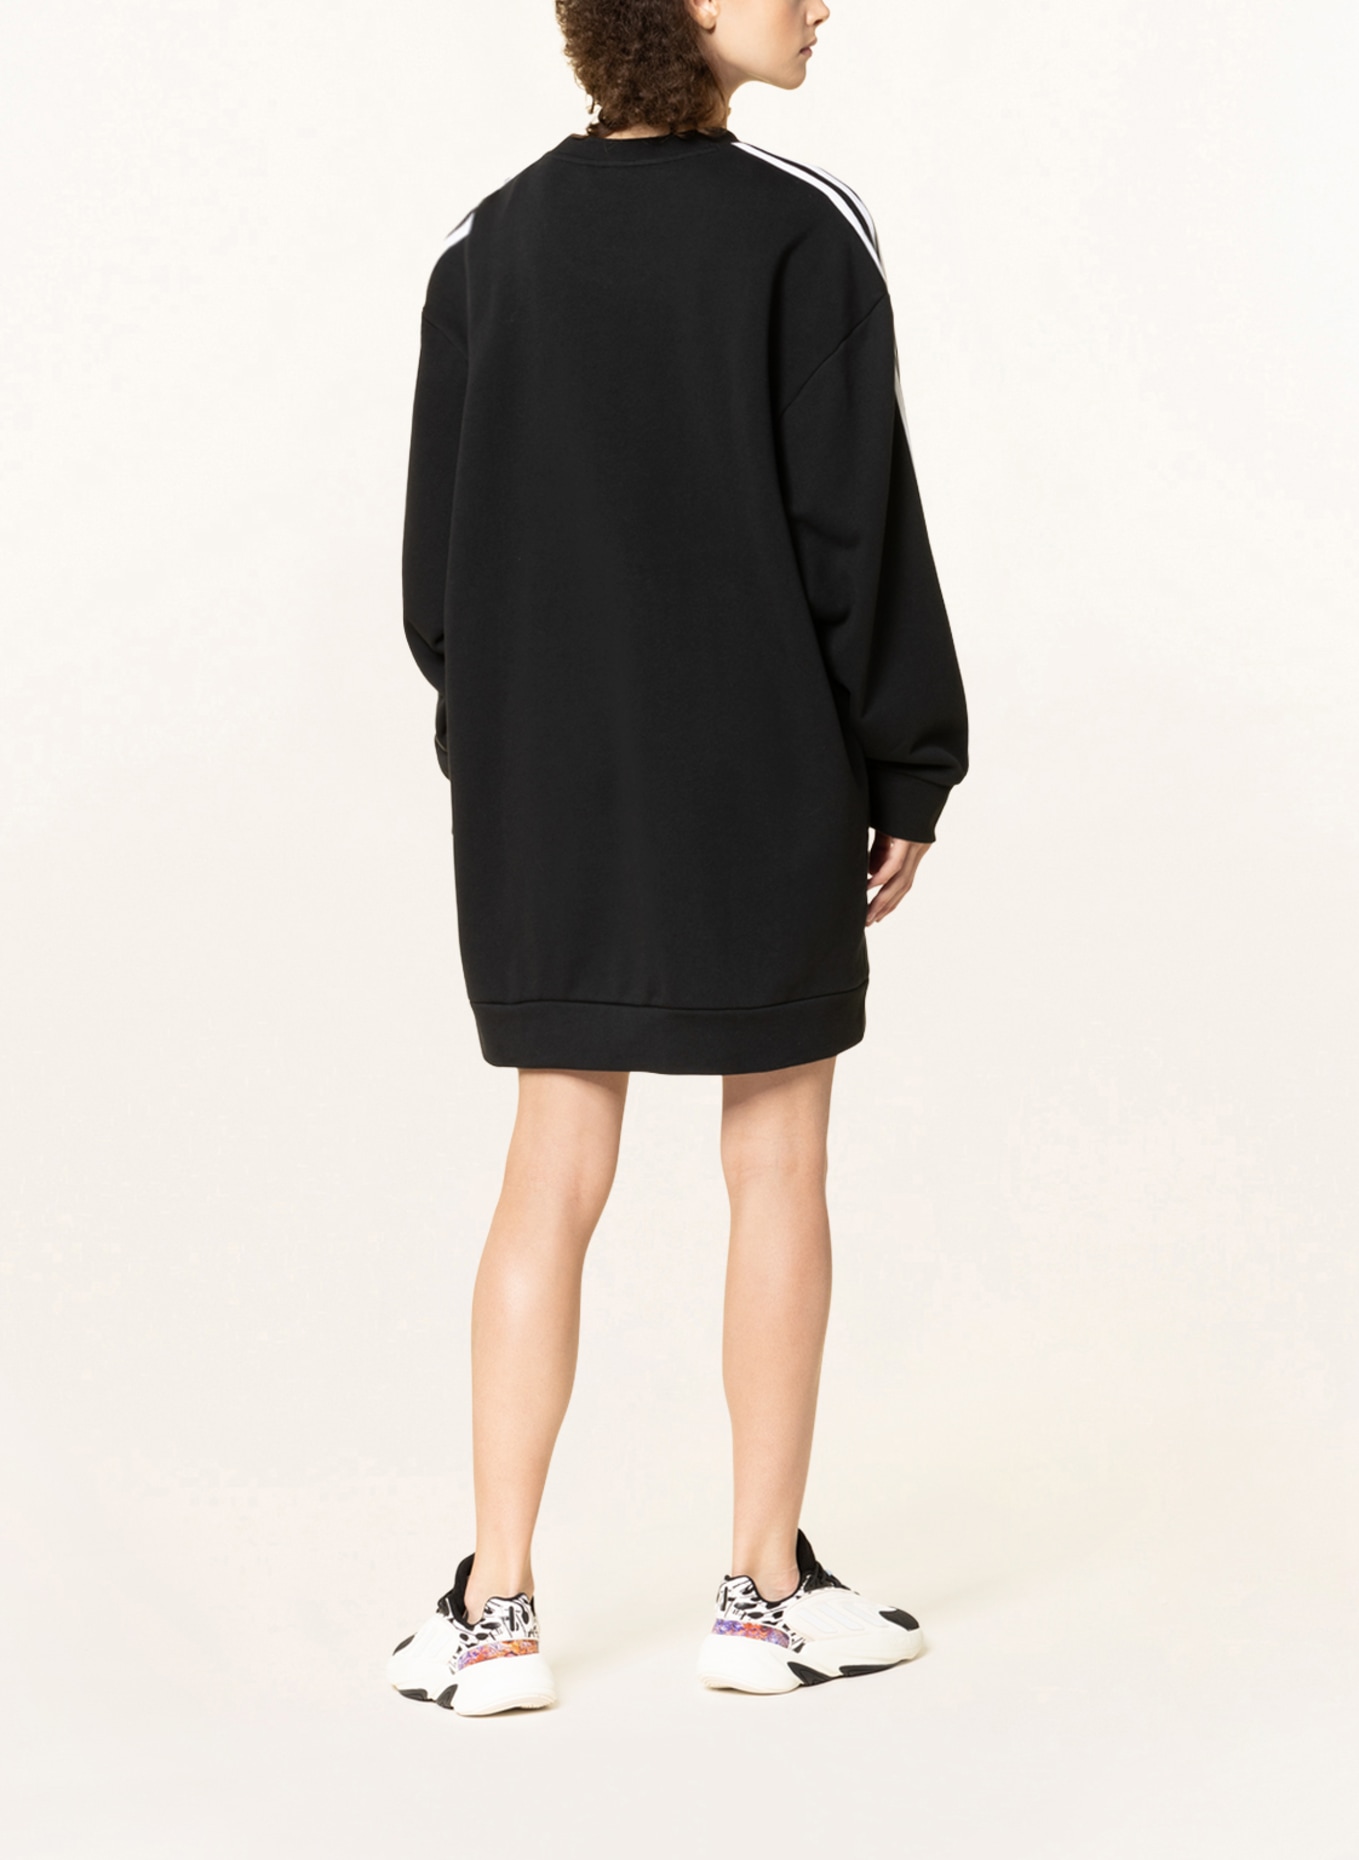 Sweater ADICOLOR dress in black adidas Originals CLASSICS